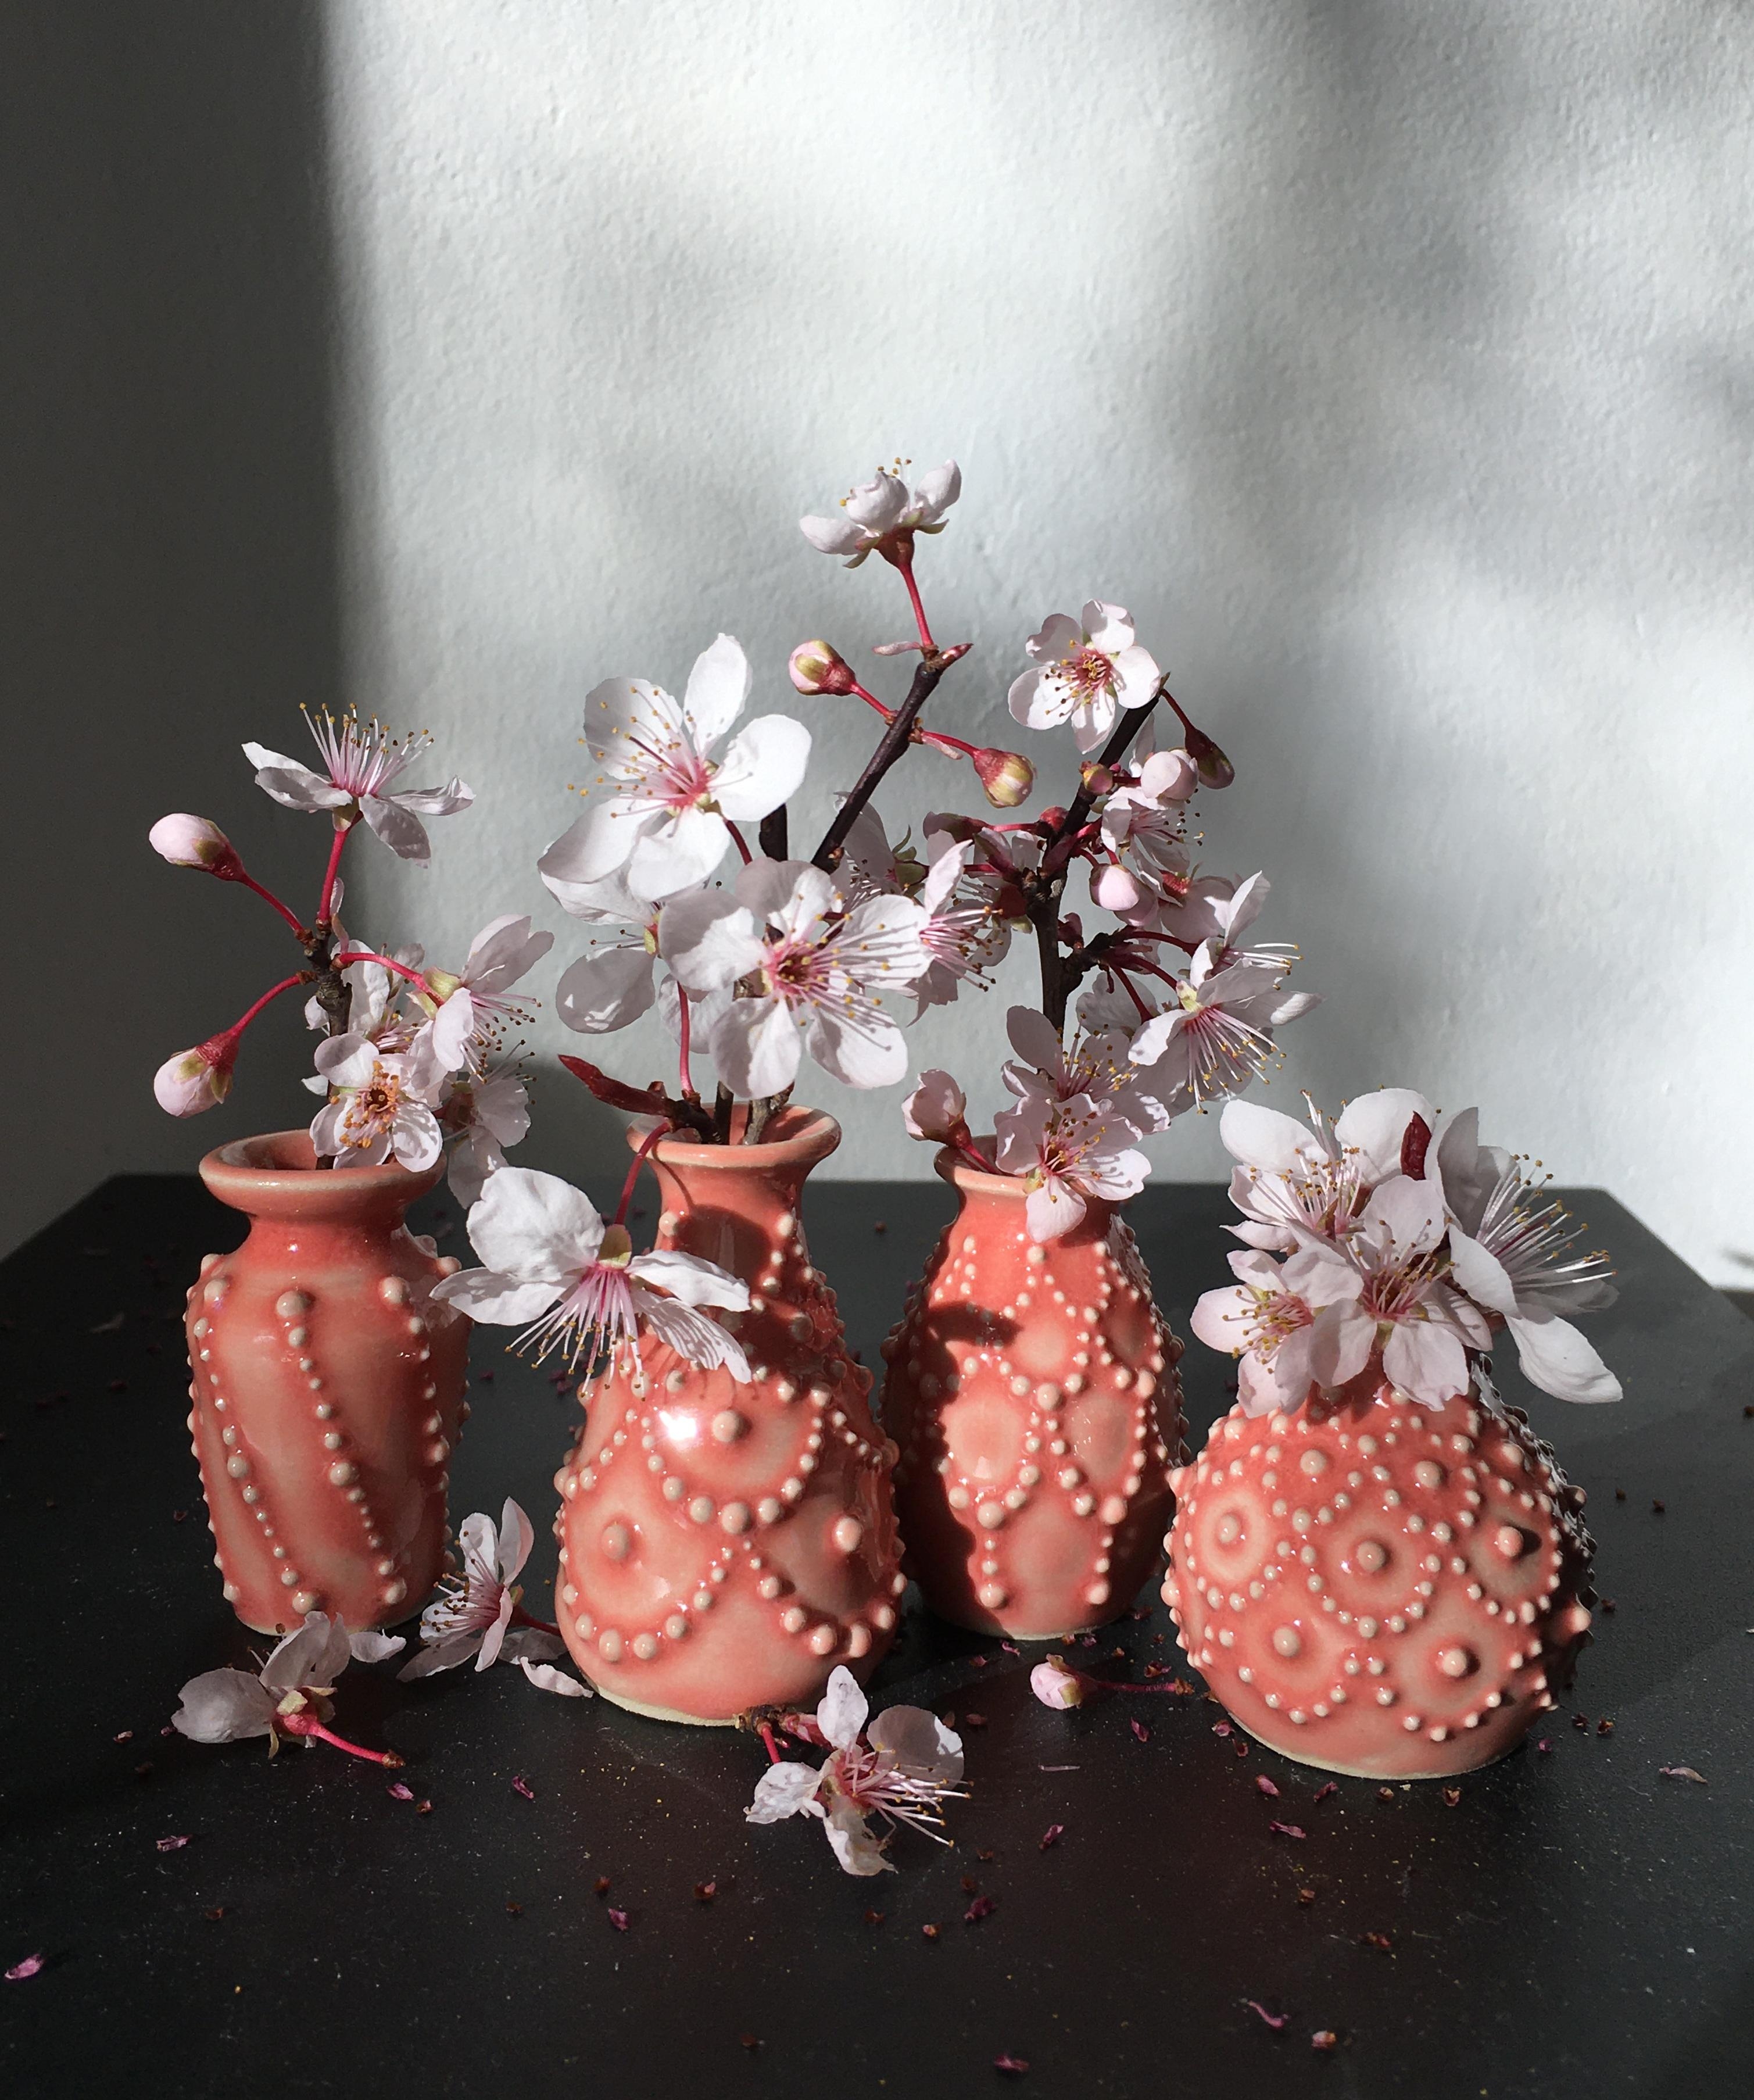 Miniaturvasen und Blüten -
meine absolute Lieblingsdeko !!!
#couchliebt#minivasen#keramik